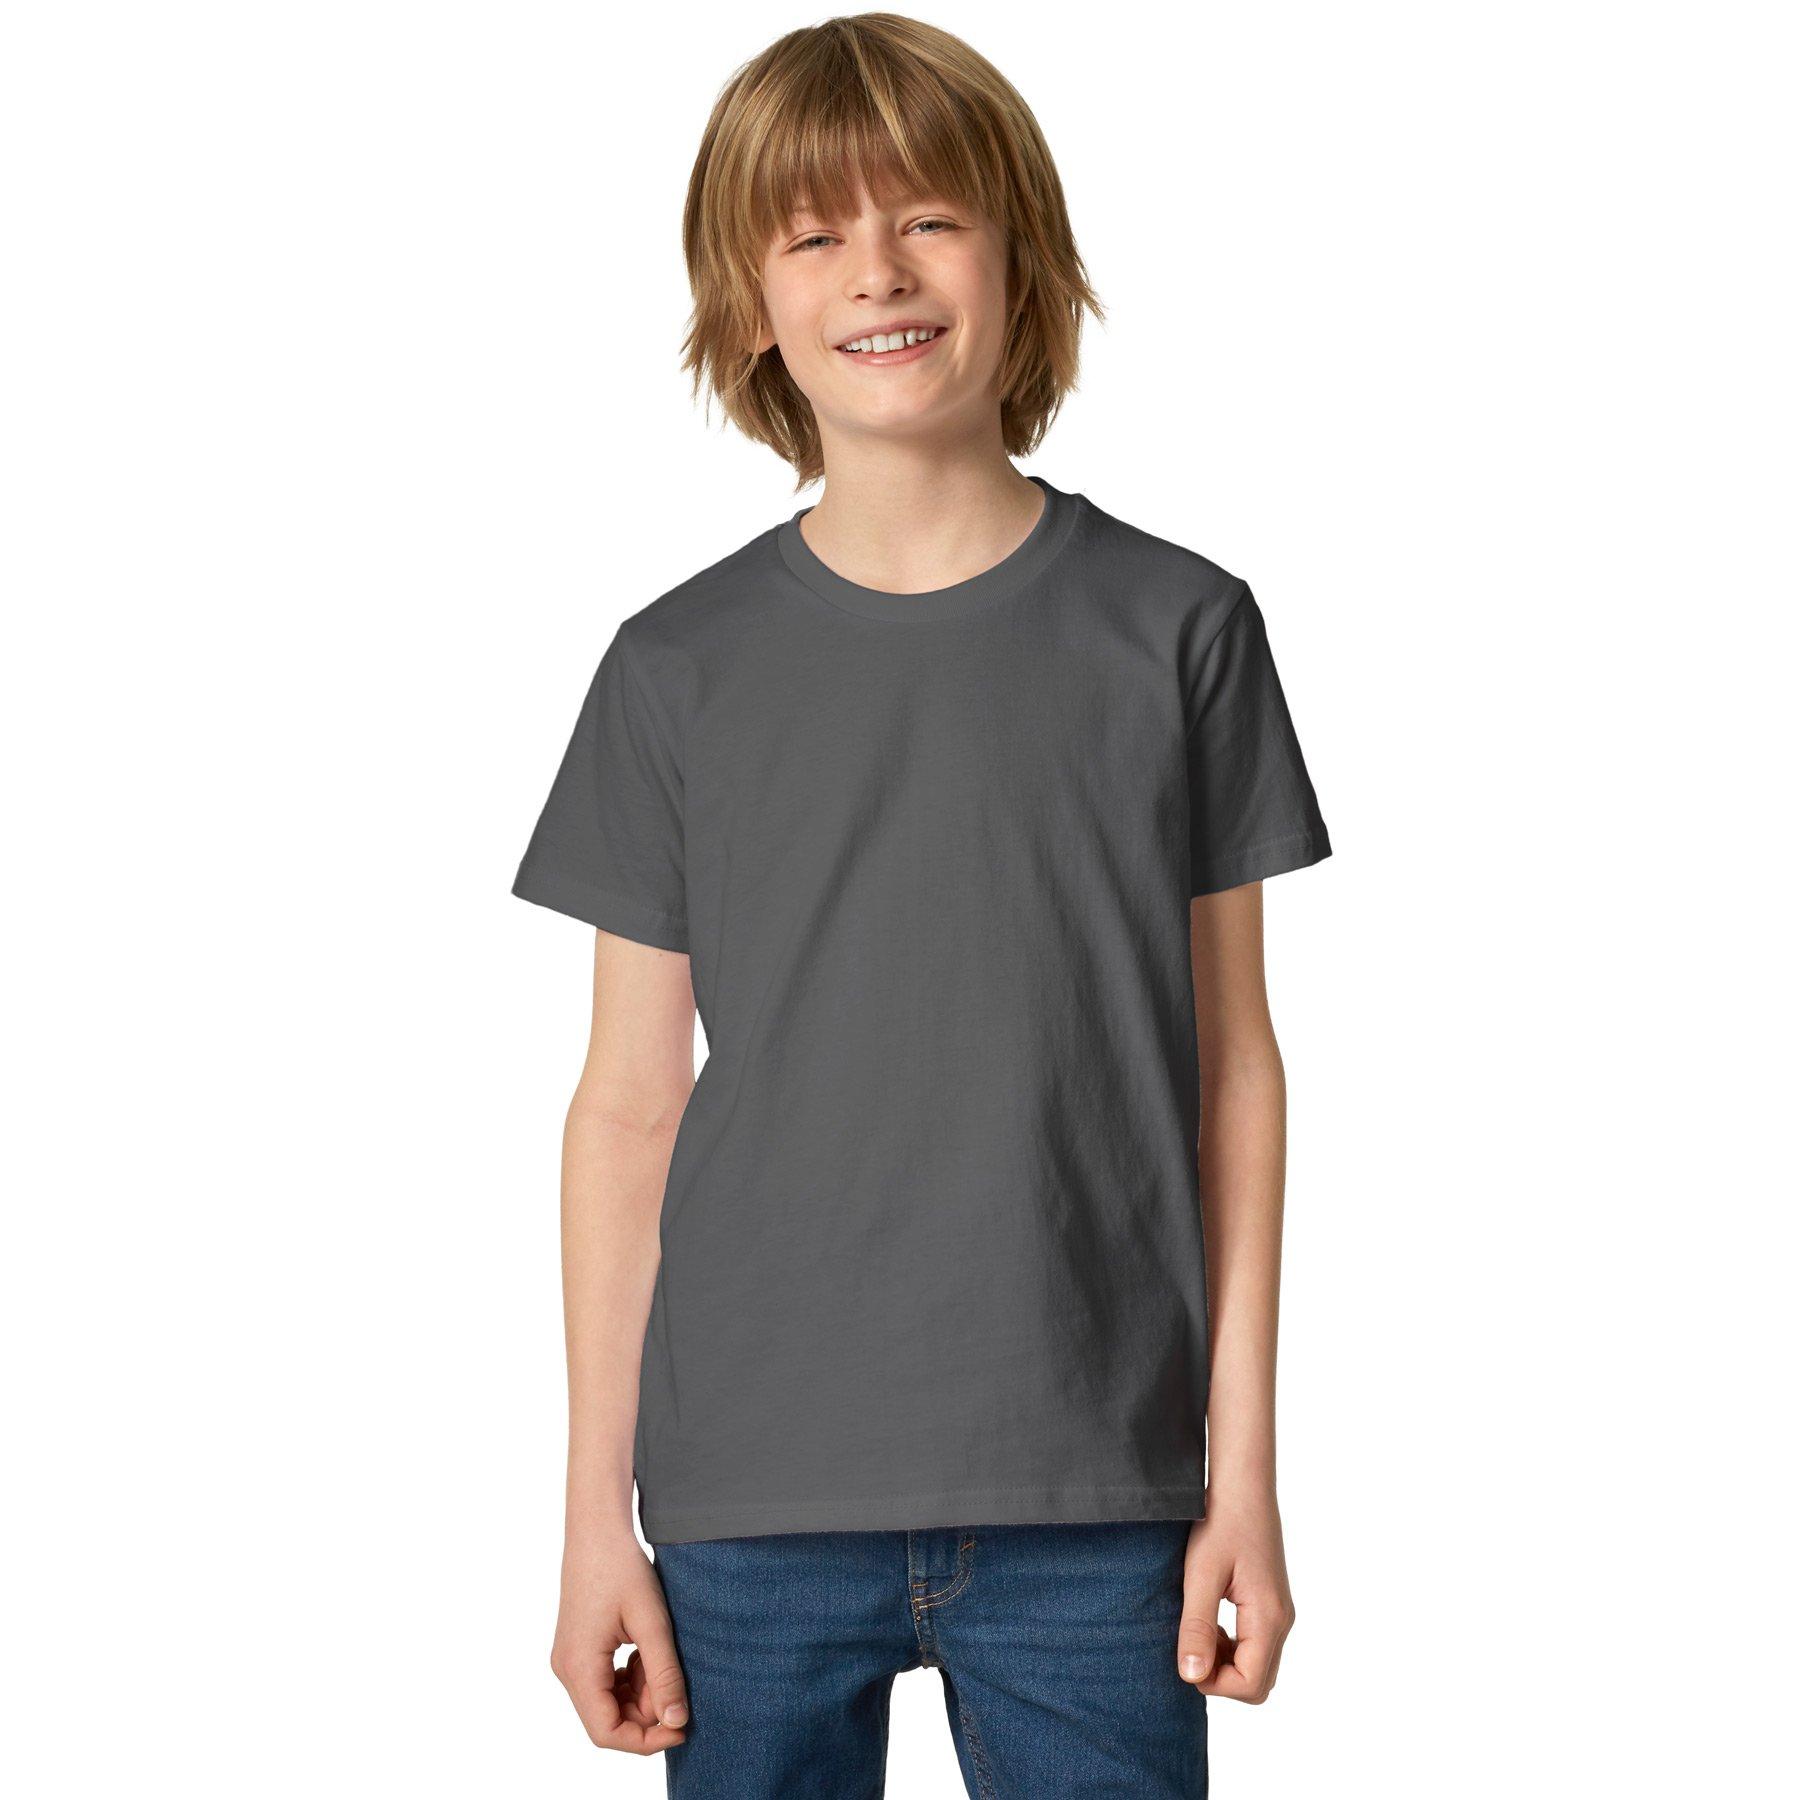 T-shirt Kinder Jungen Grau 140 von Tectake